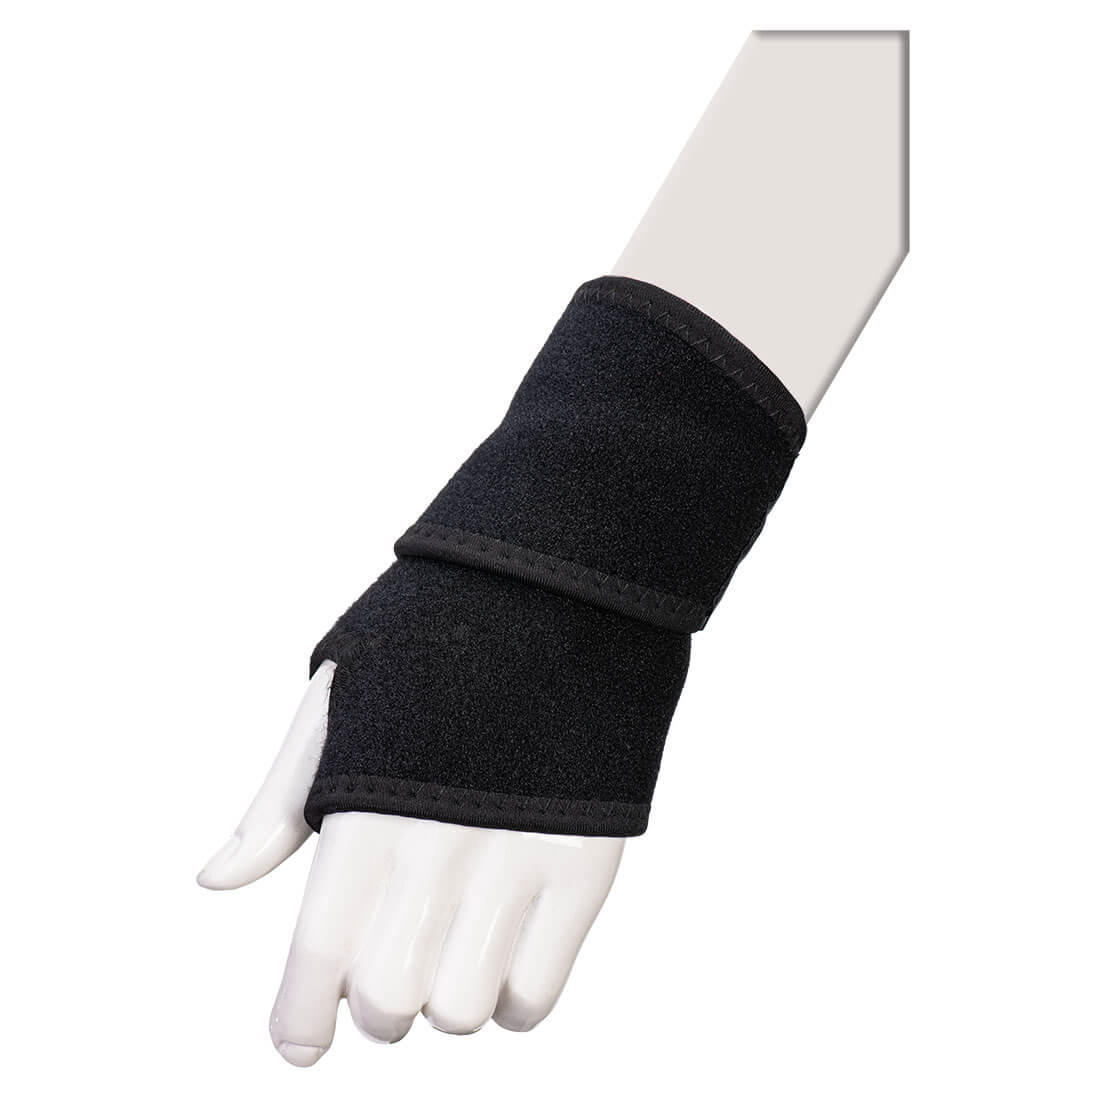 Suport elastic pentru încheietura mâinii - Echipamente de protectie personala